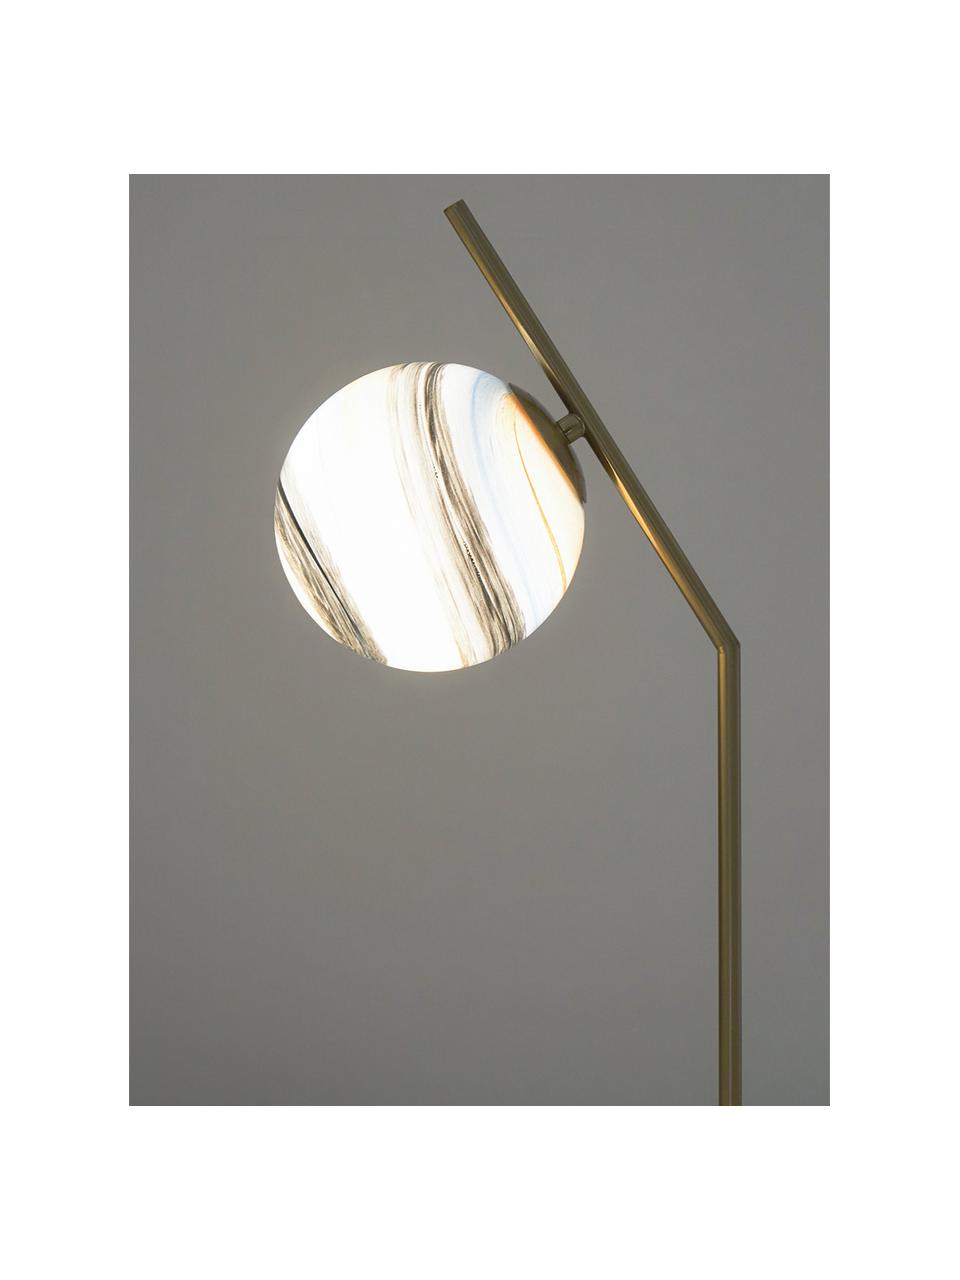 Lampada da tavolo con base in marmo Opal, Paralume: vetro, Base della lampada: marmo, Colori ottone, bianco, colori pastello, Larg. 25 x Alt. 56 cm